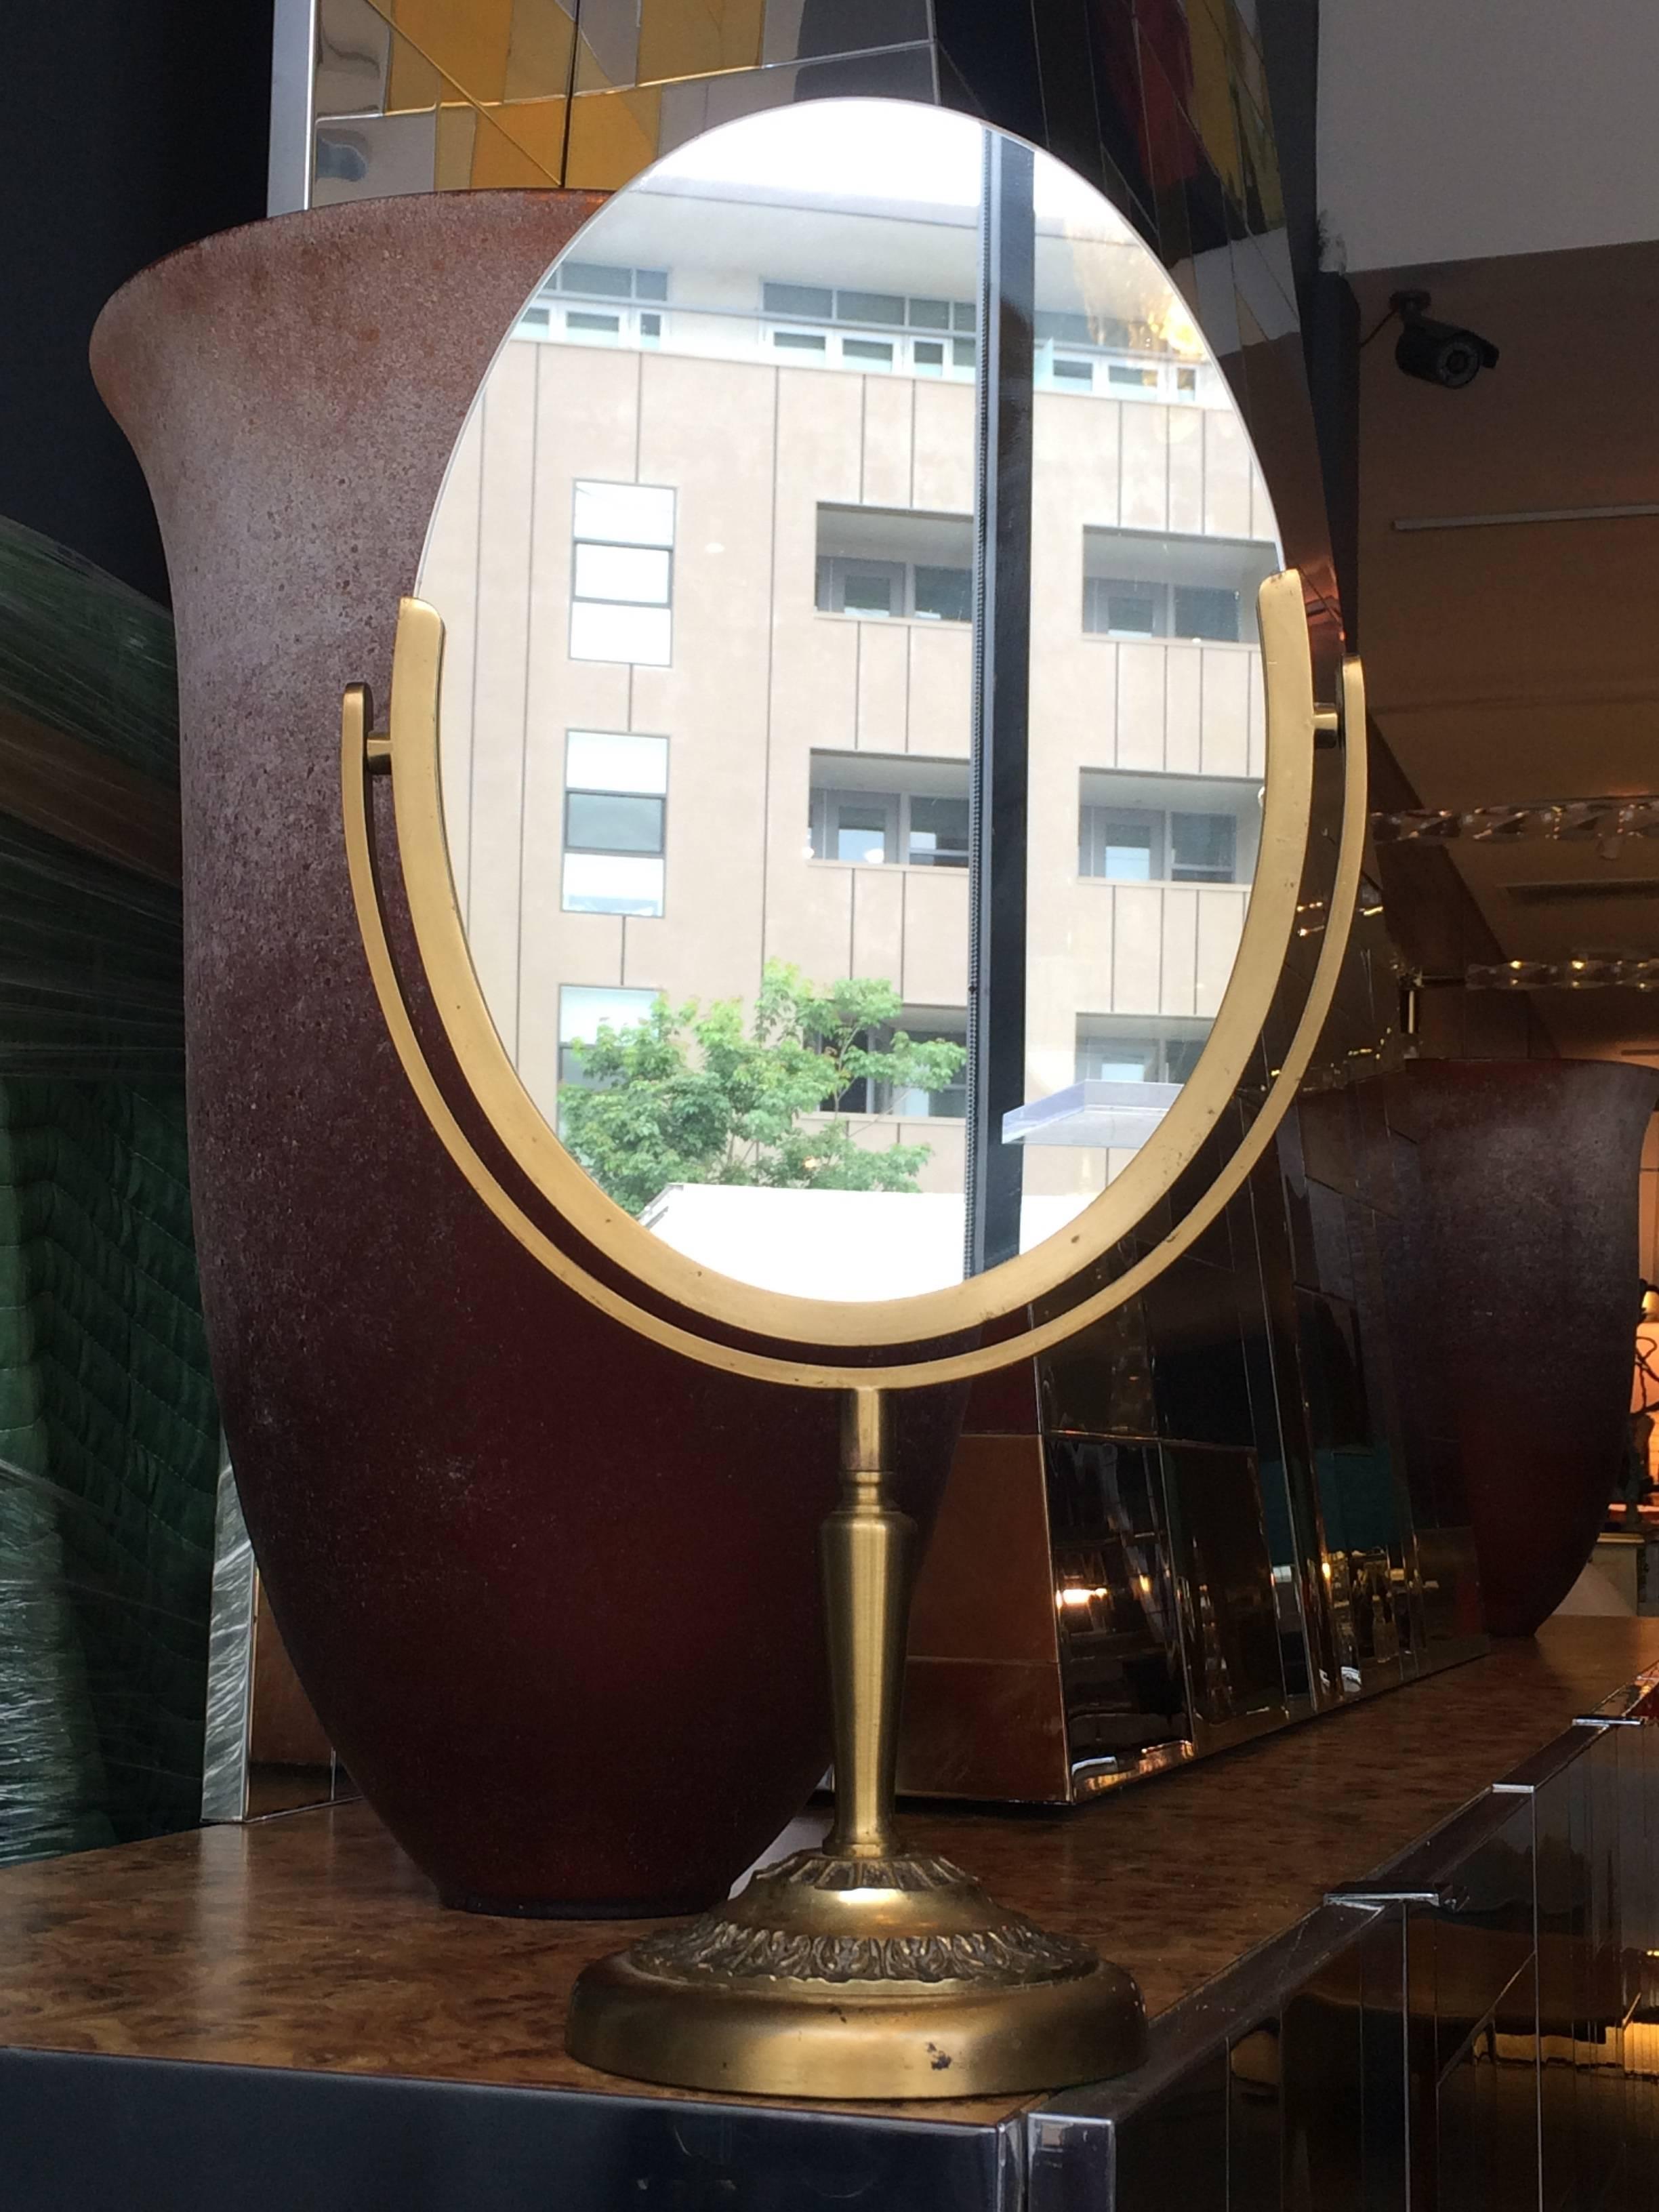 Magnifique miroir ovale conçu et fabriqué par Charles Hollis Jones dans les années 1960. Le cadre et la base du miroir sont en laiton antique. Le miroir est double face et peut être retourné pour être utilisé des deux côtés.
L'œuvre est signée par